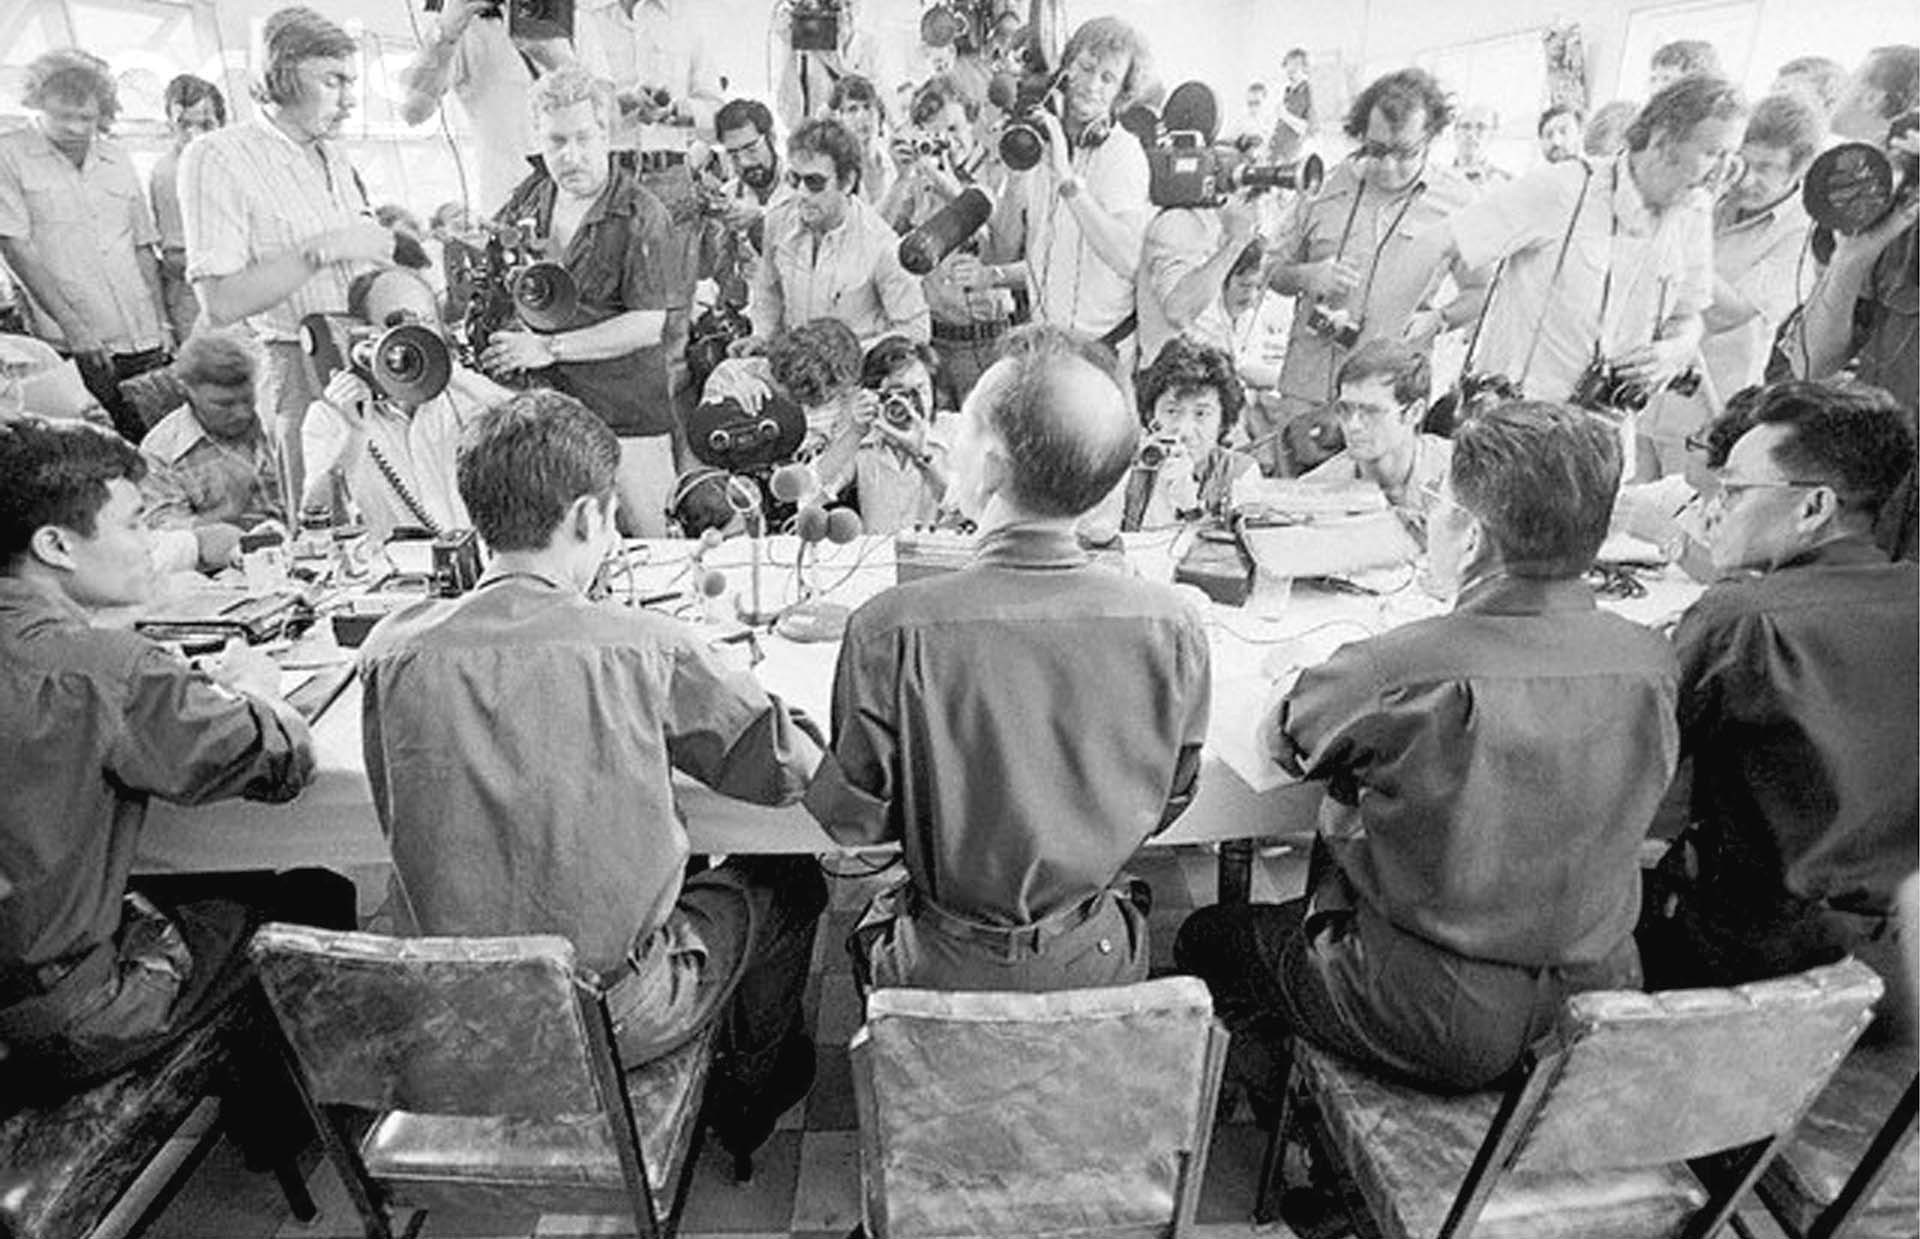 Đại tá Võ Đông Giang chủ trì một cuộc họp báo ở Trại Davis - Sài Gòn.